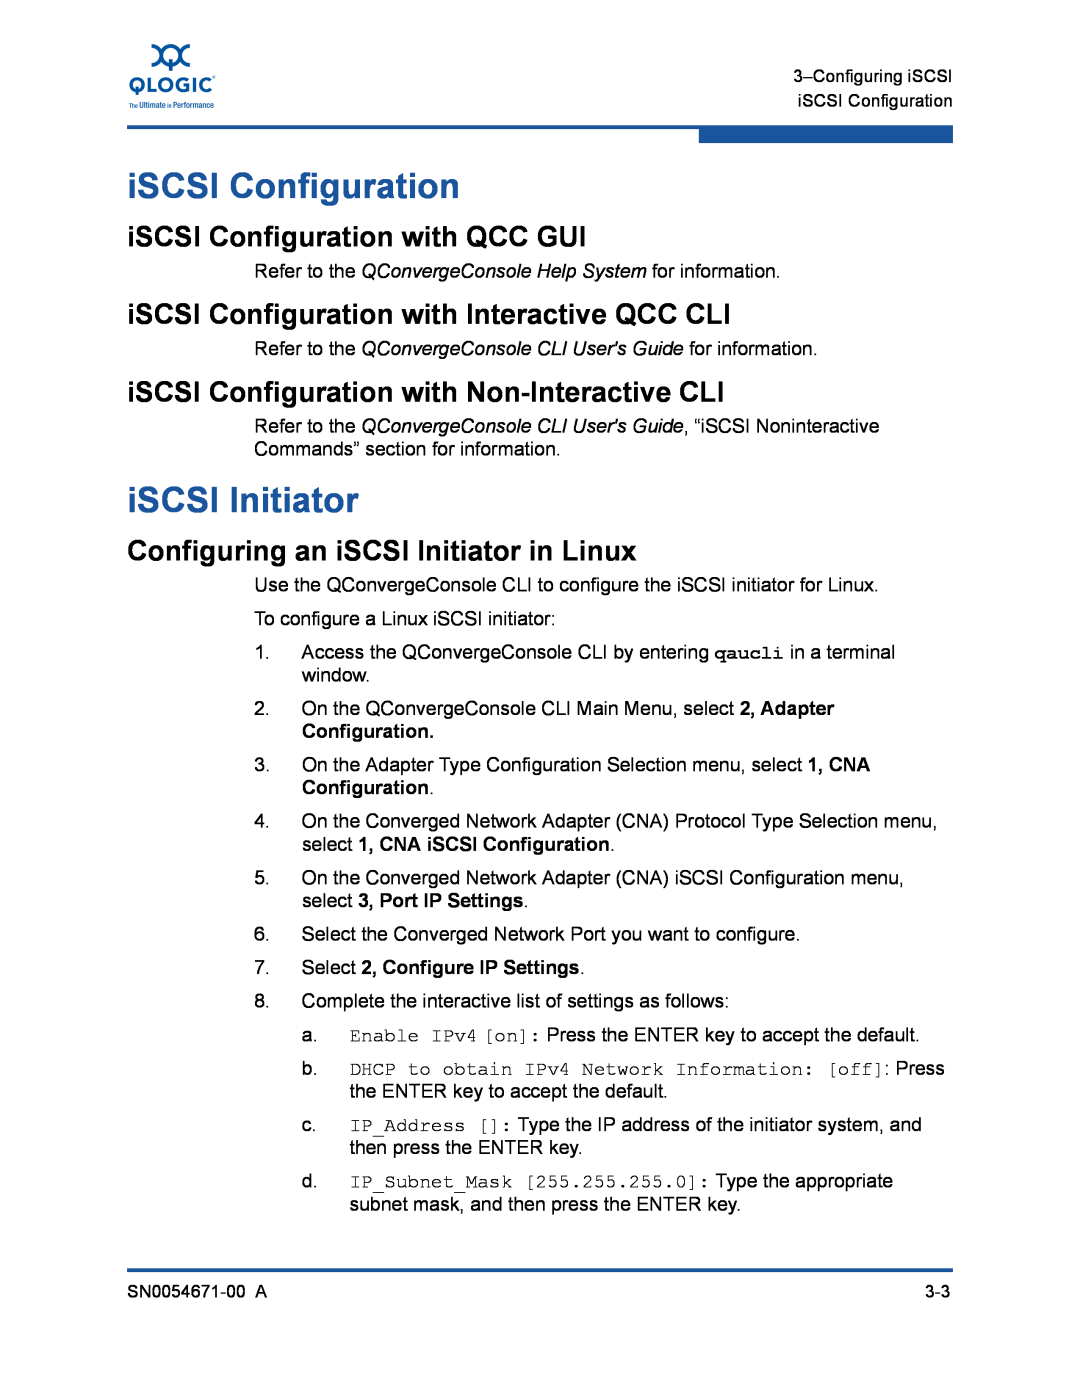 Q-Logic 3200, 8200 iSCSI Initiator, iSCSI Configuration with QCC GUI, iSCSI Configuration with Interactive QCC CLI 